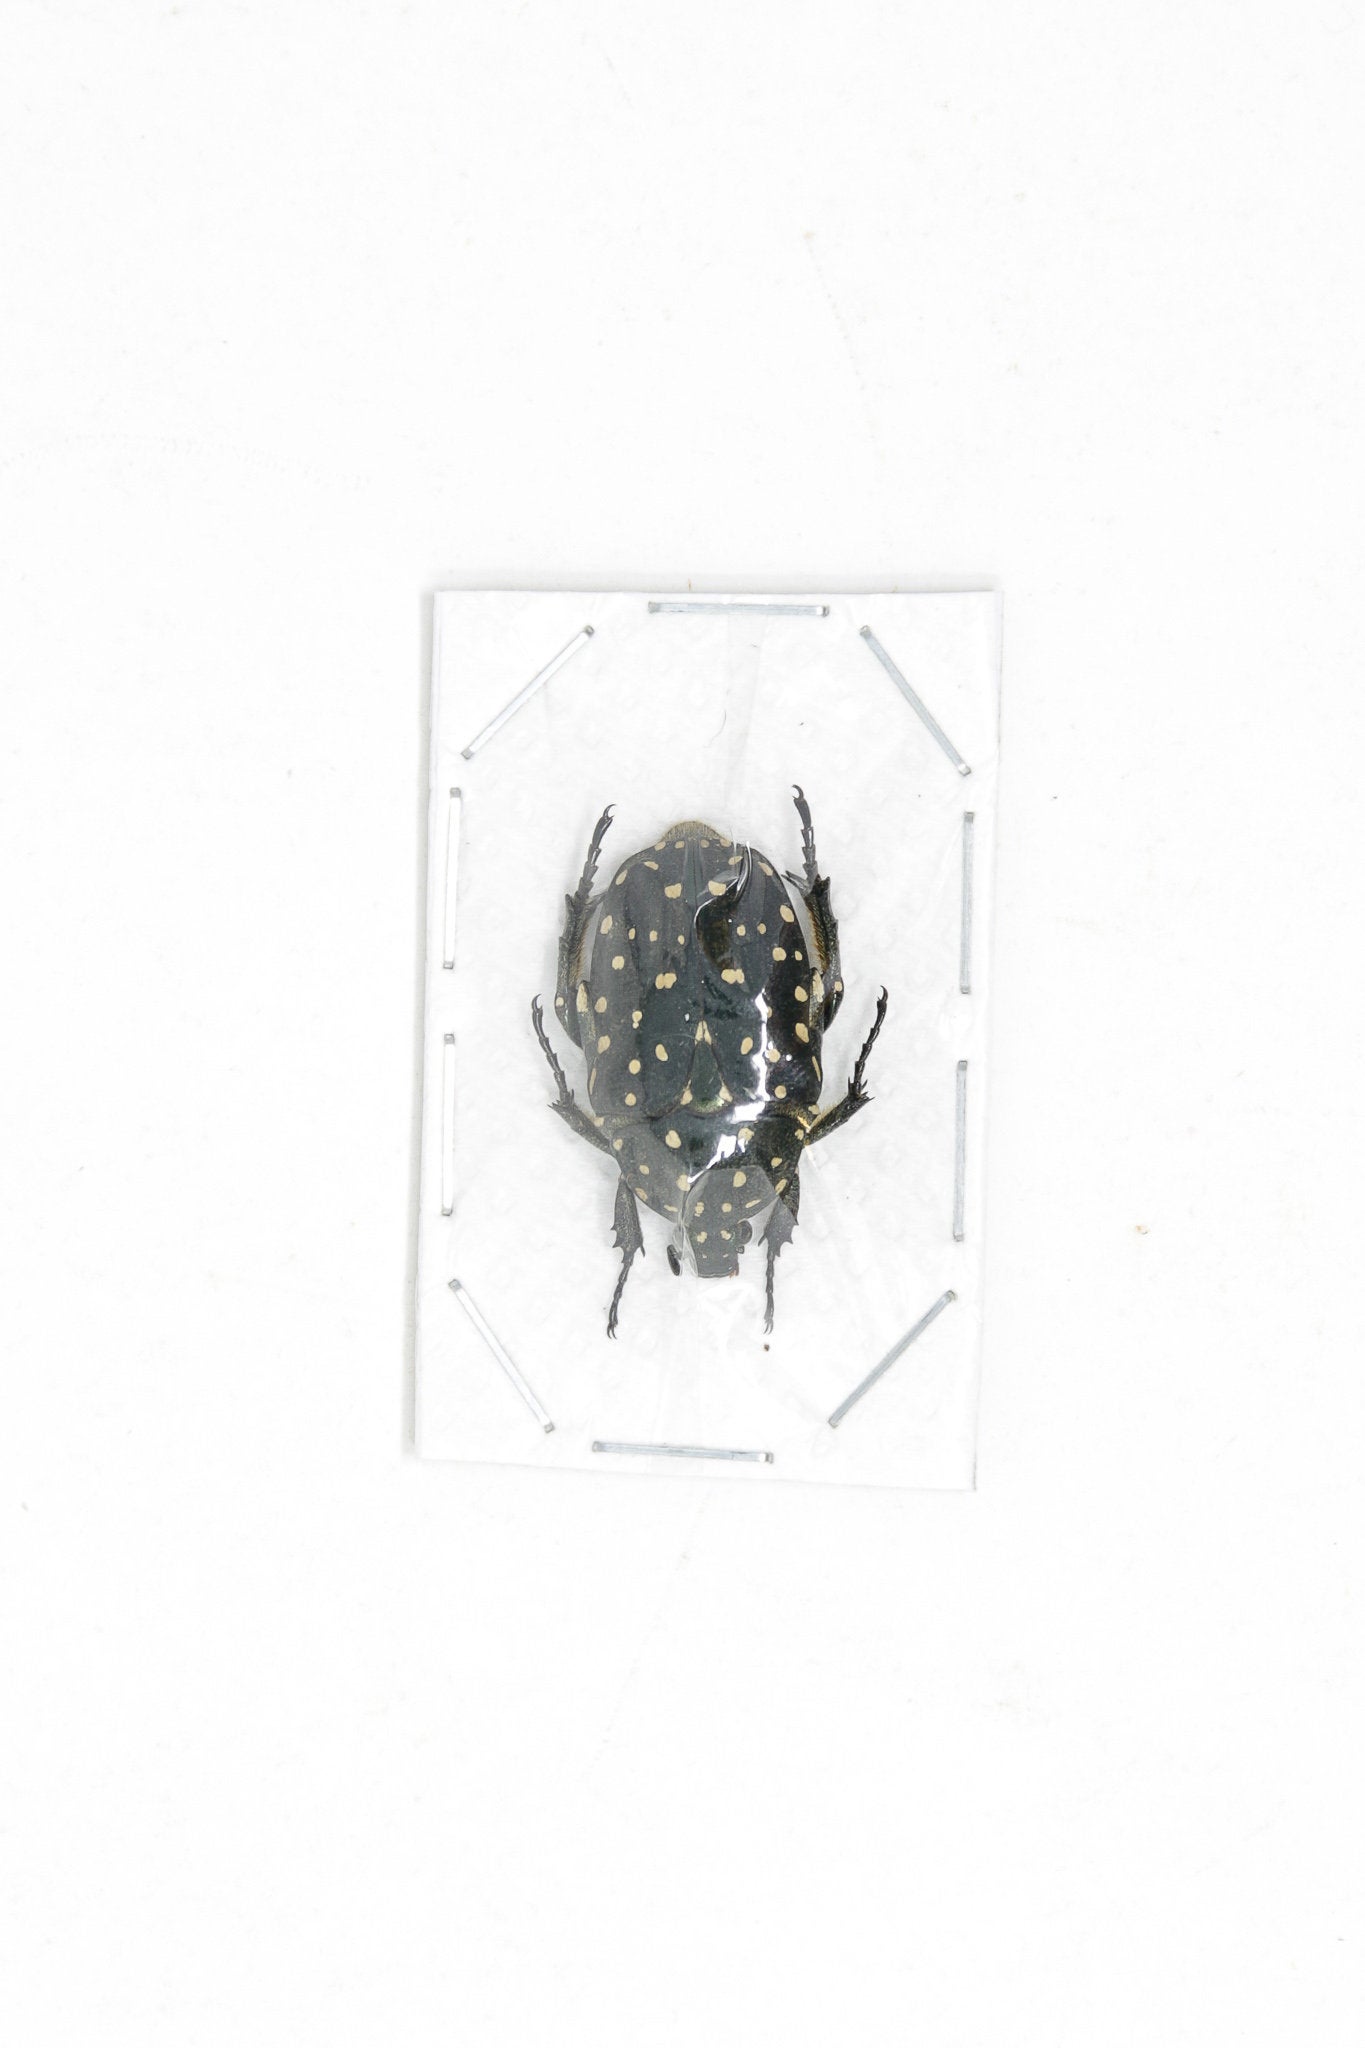 Speckled Flower Beetles (Platynocephalus niveoguttata) A1 Unmounted Specimens